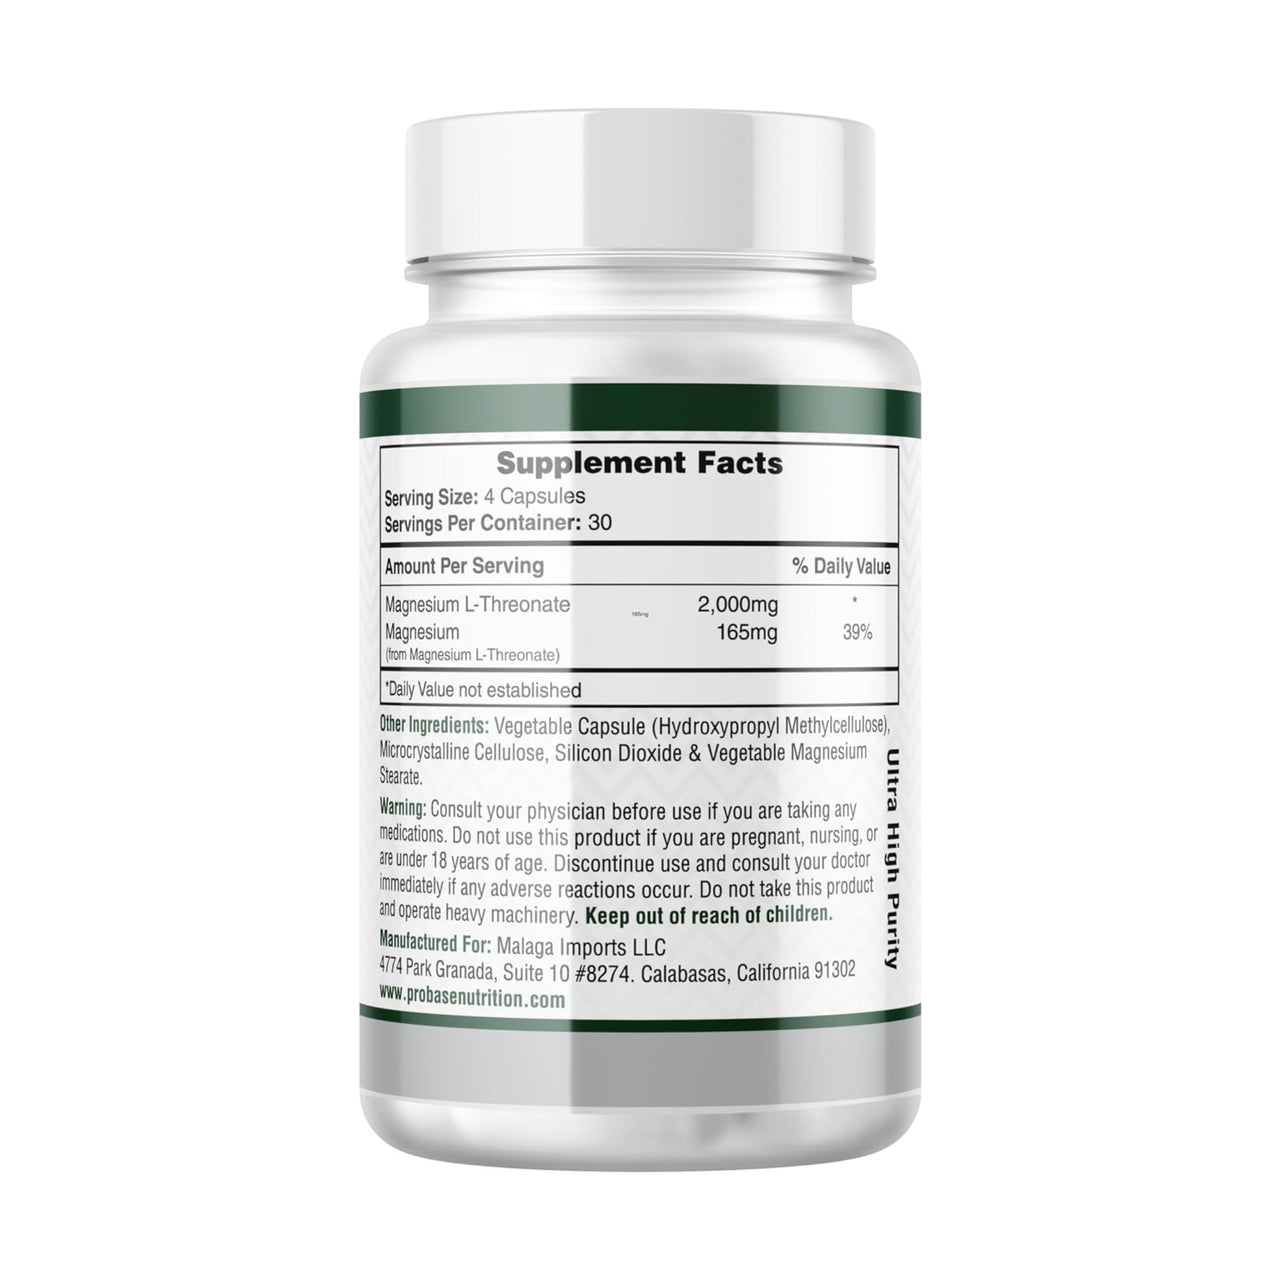 Probase Nutrition Magnesium L Threonate Capsules – 2,000 mg – 120 Capsules